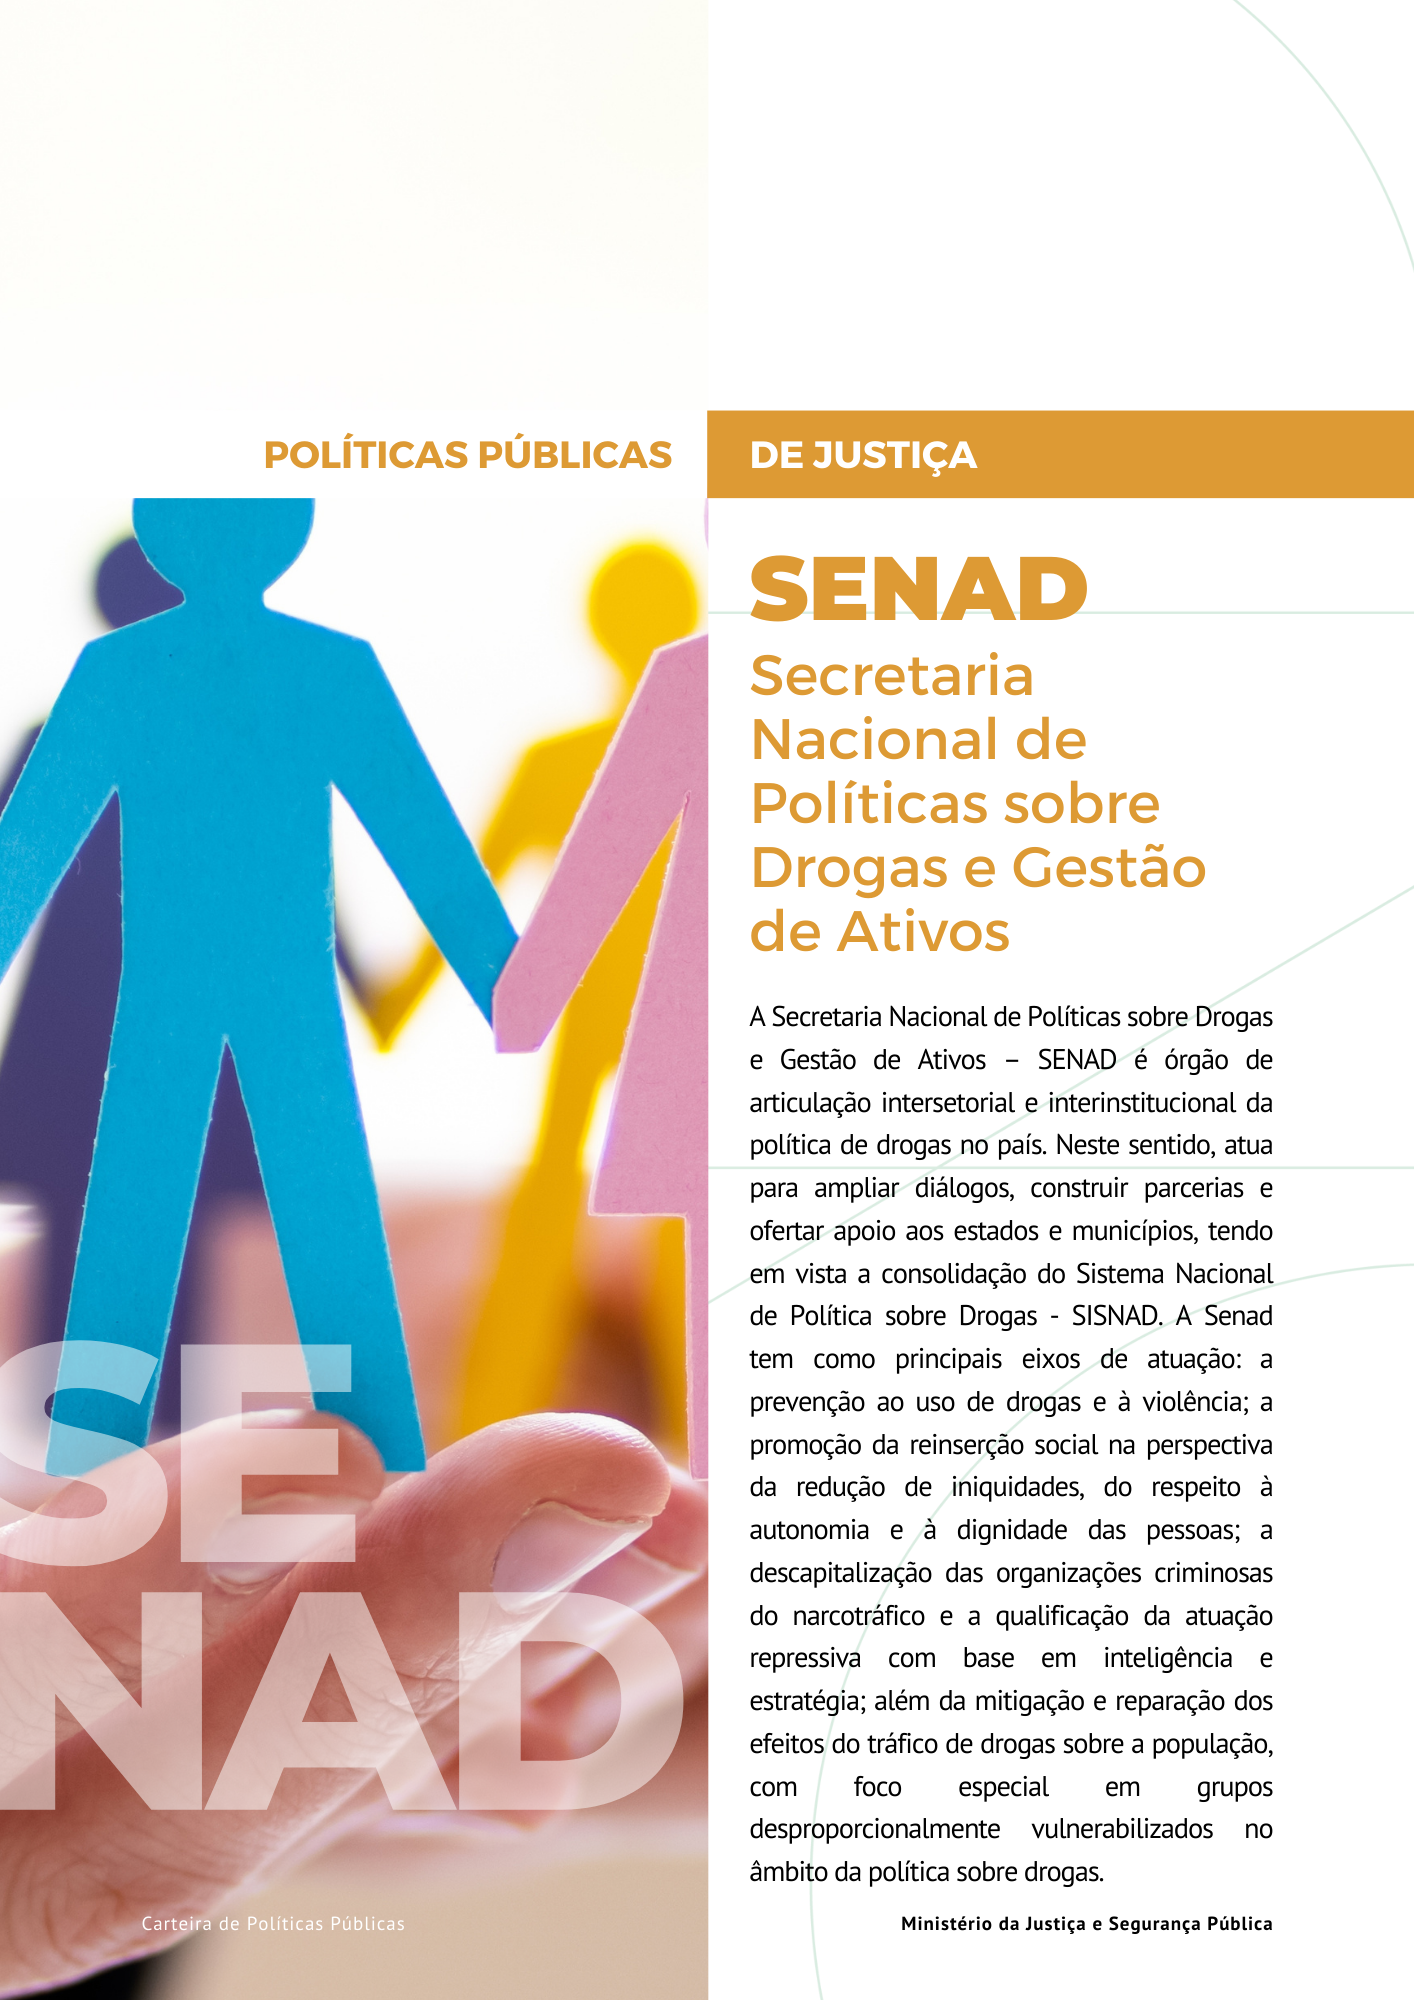 Link para acesso as políticas públicas da Secretaria Nacional de Políticas sobre Drogas - SENAD